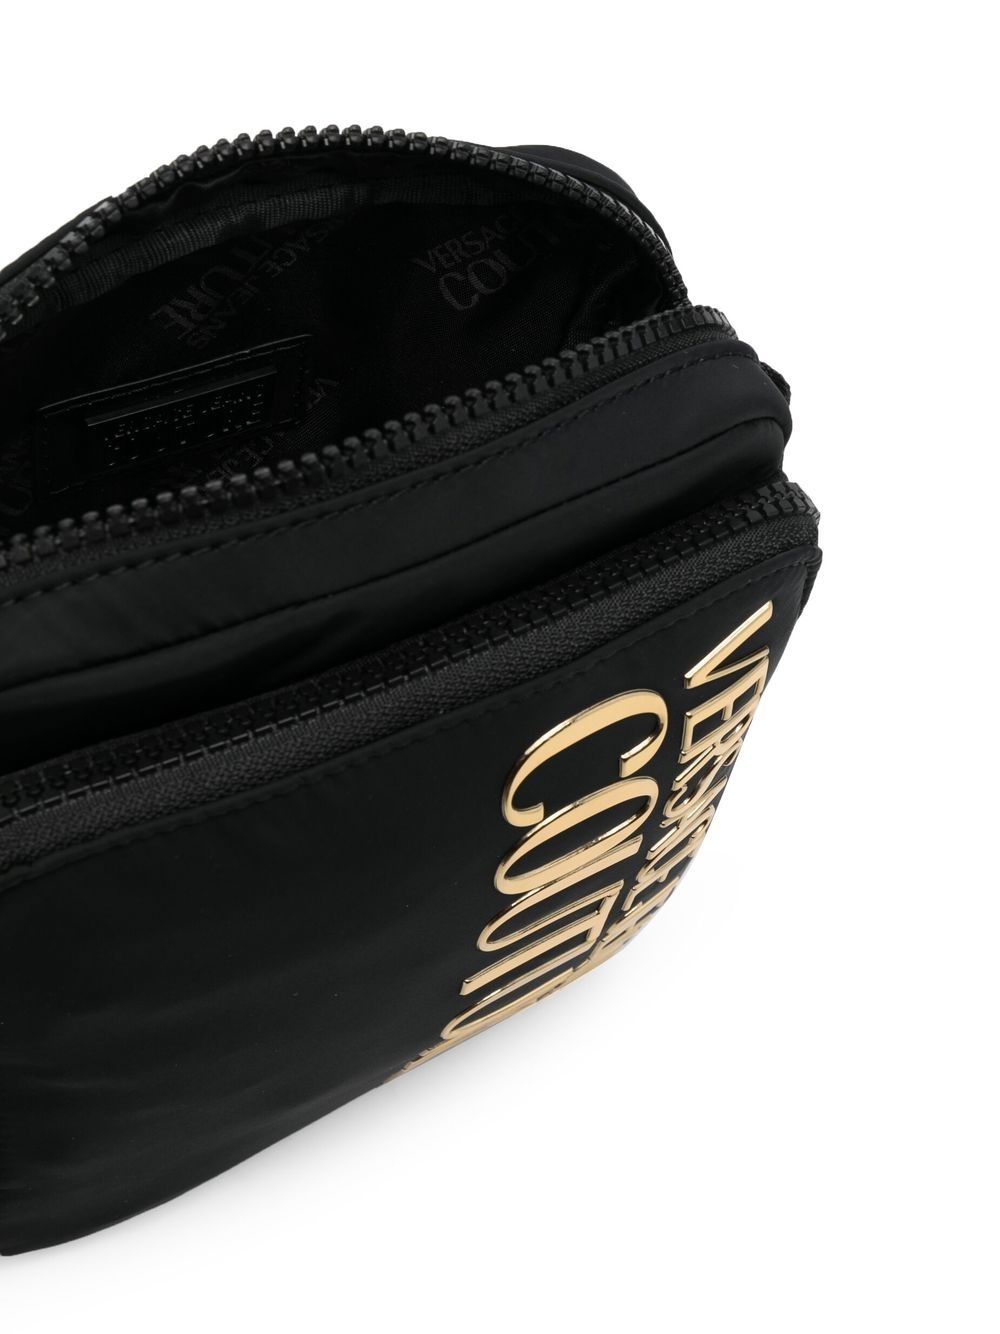 Shop Versace Jeans Couture Logo-plaque Detail Messenger Bag In Black